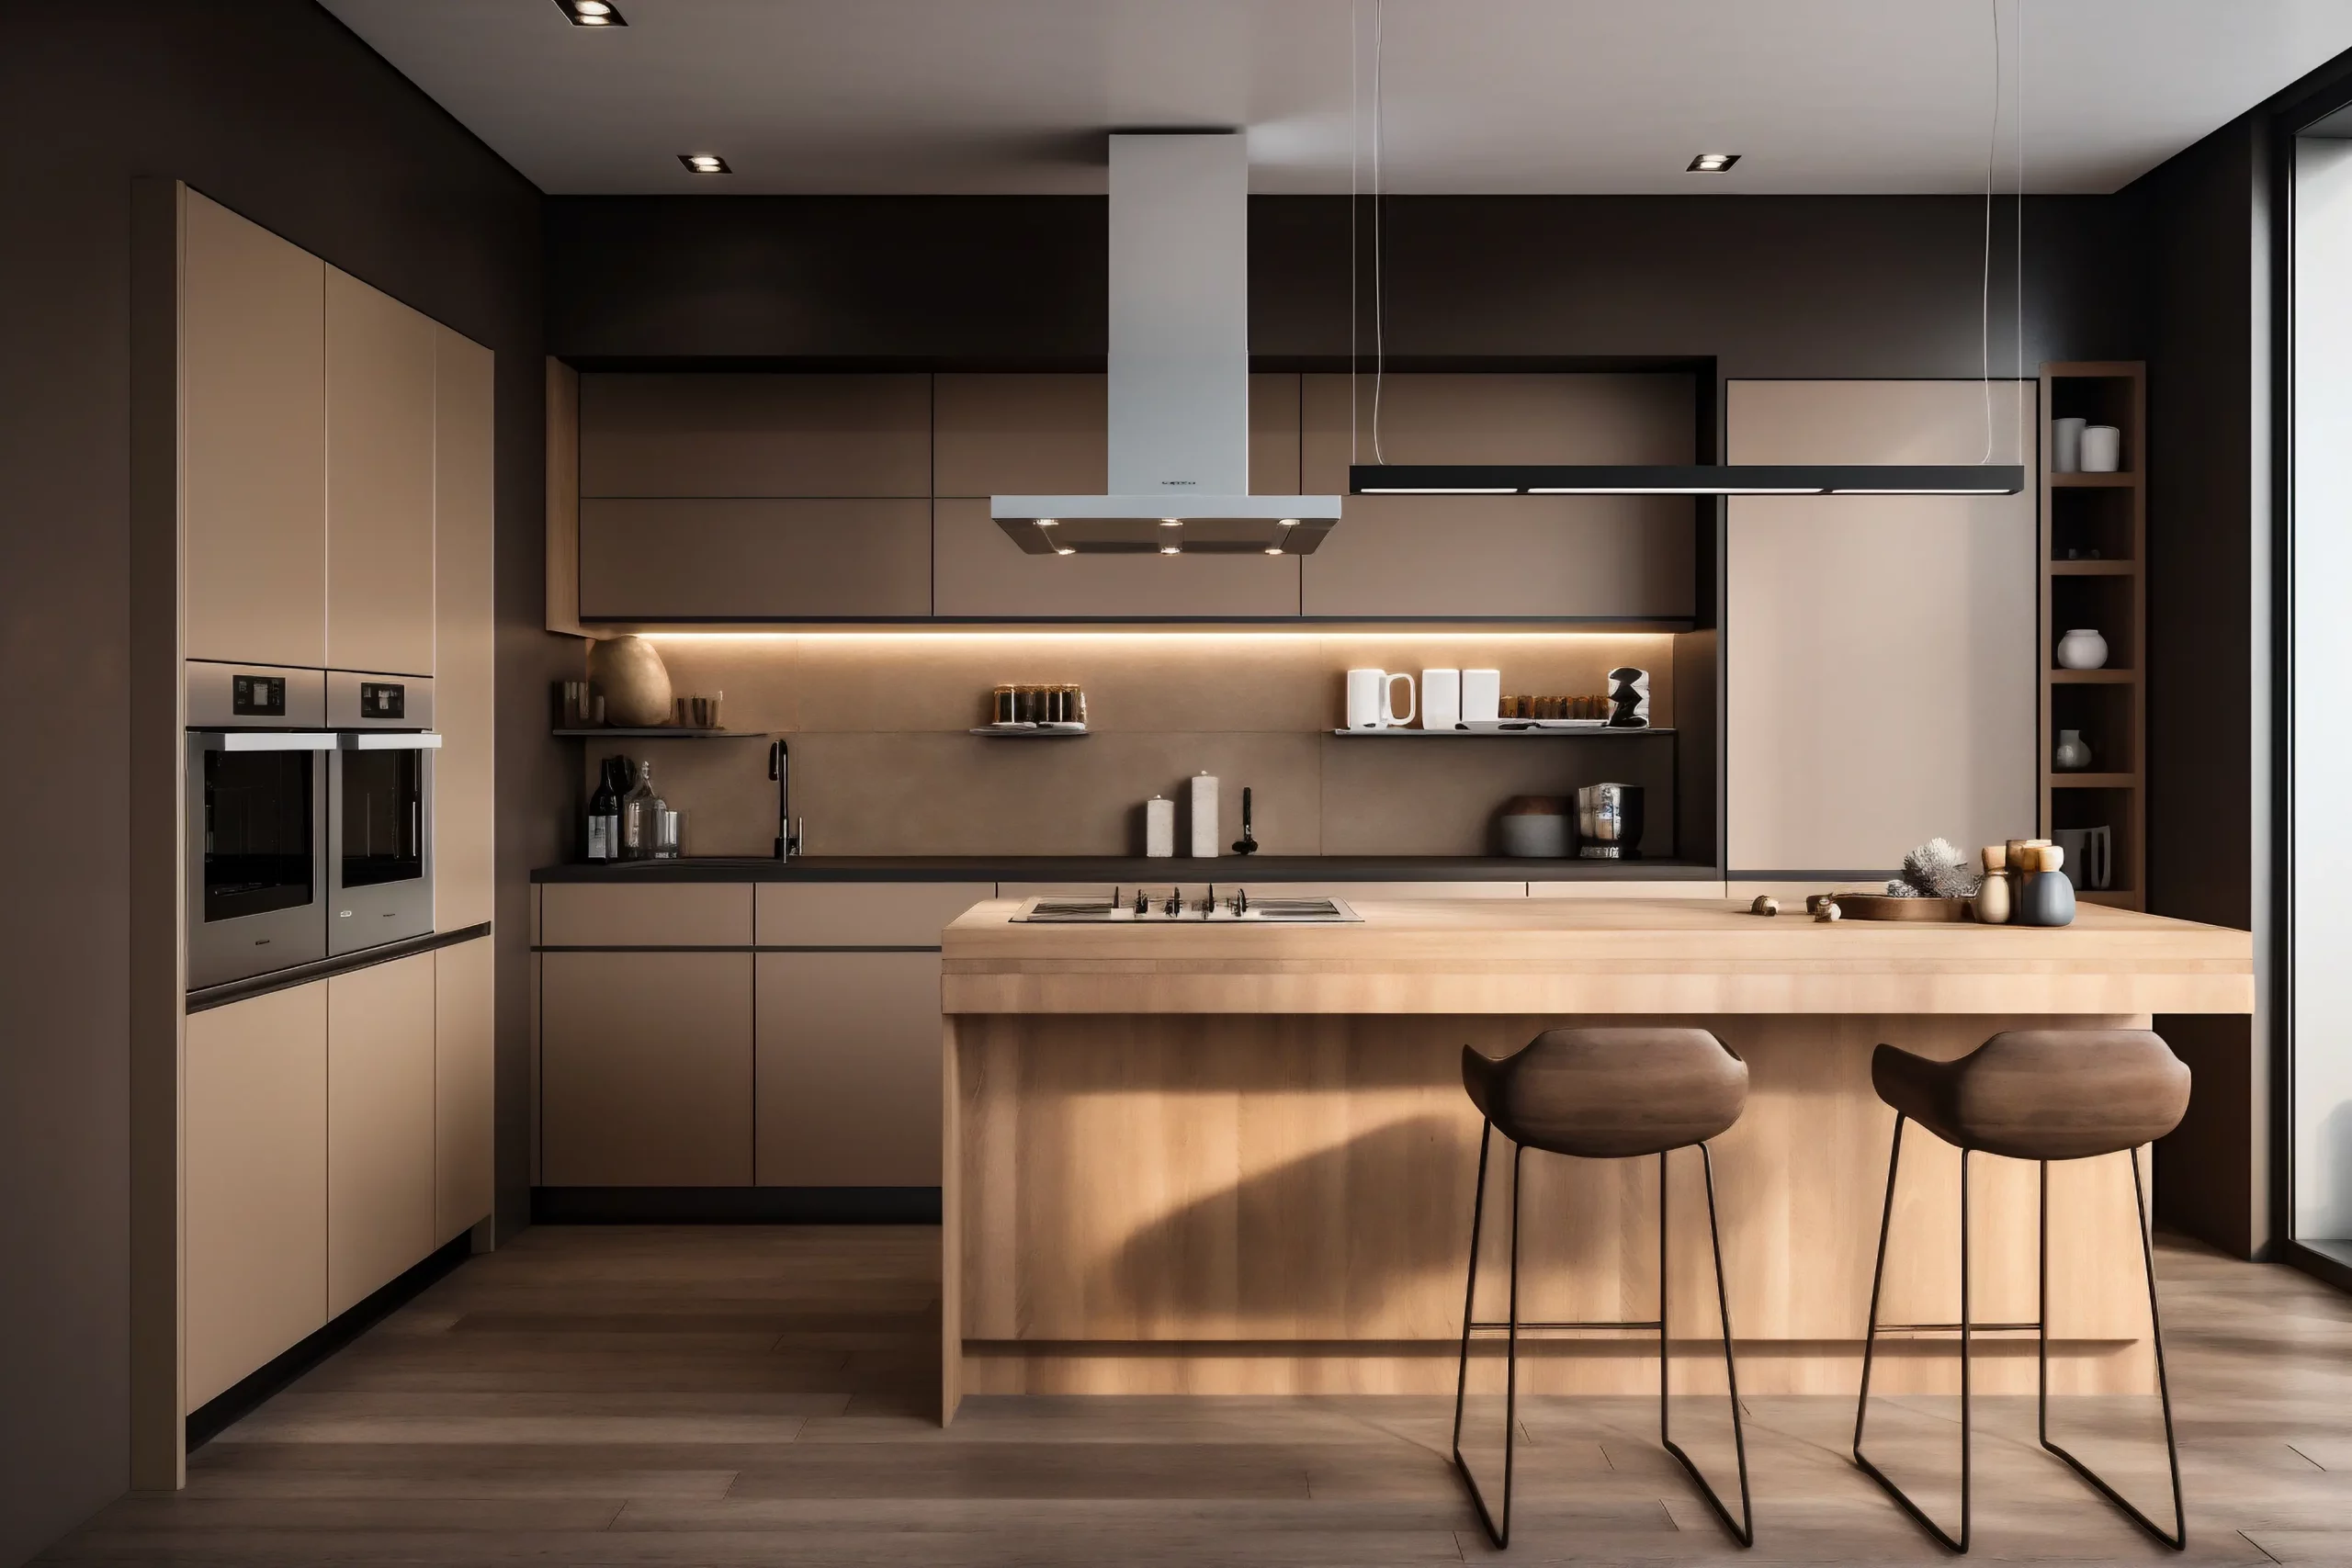 kitchen-modern-style-wooden-kitchen-interior-with-kitchen-furniture